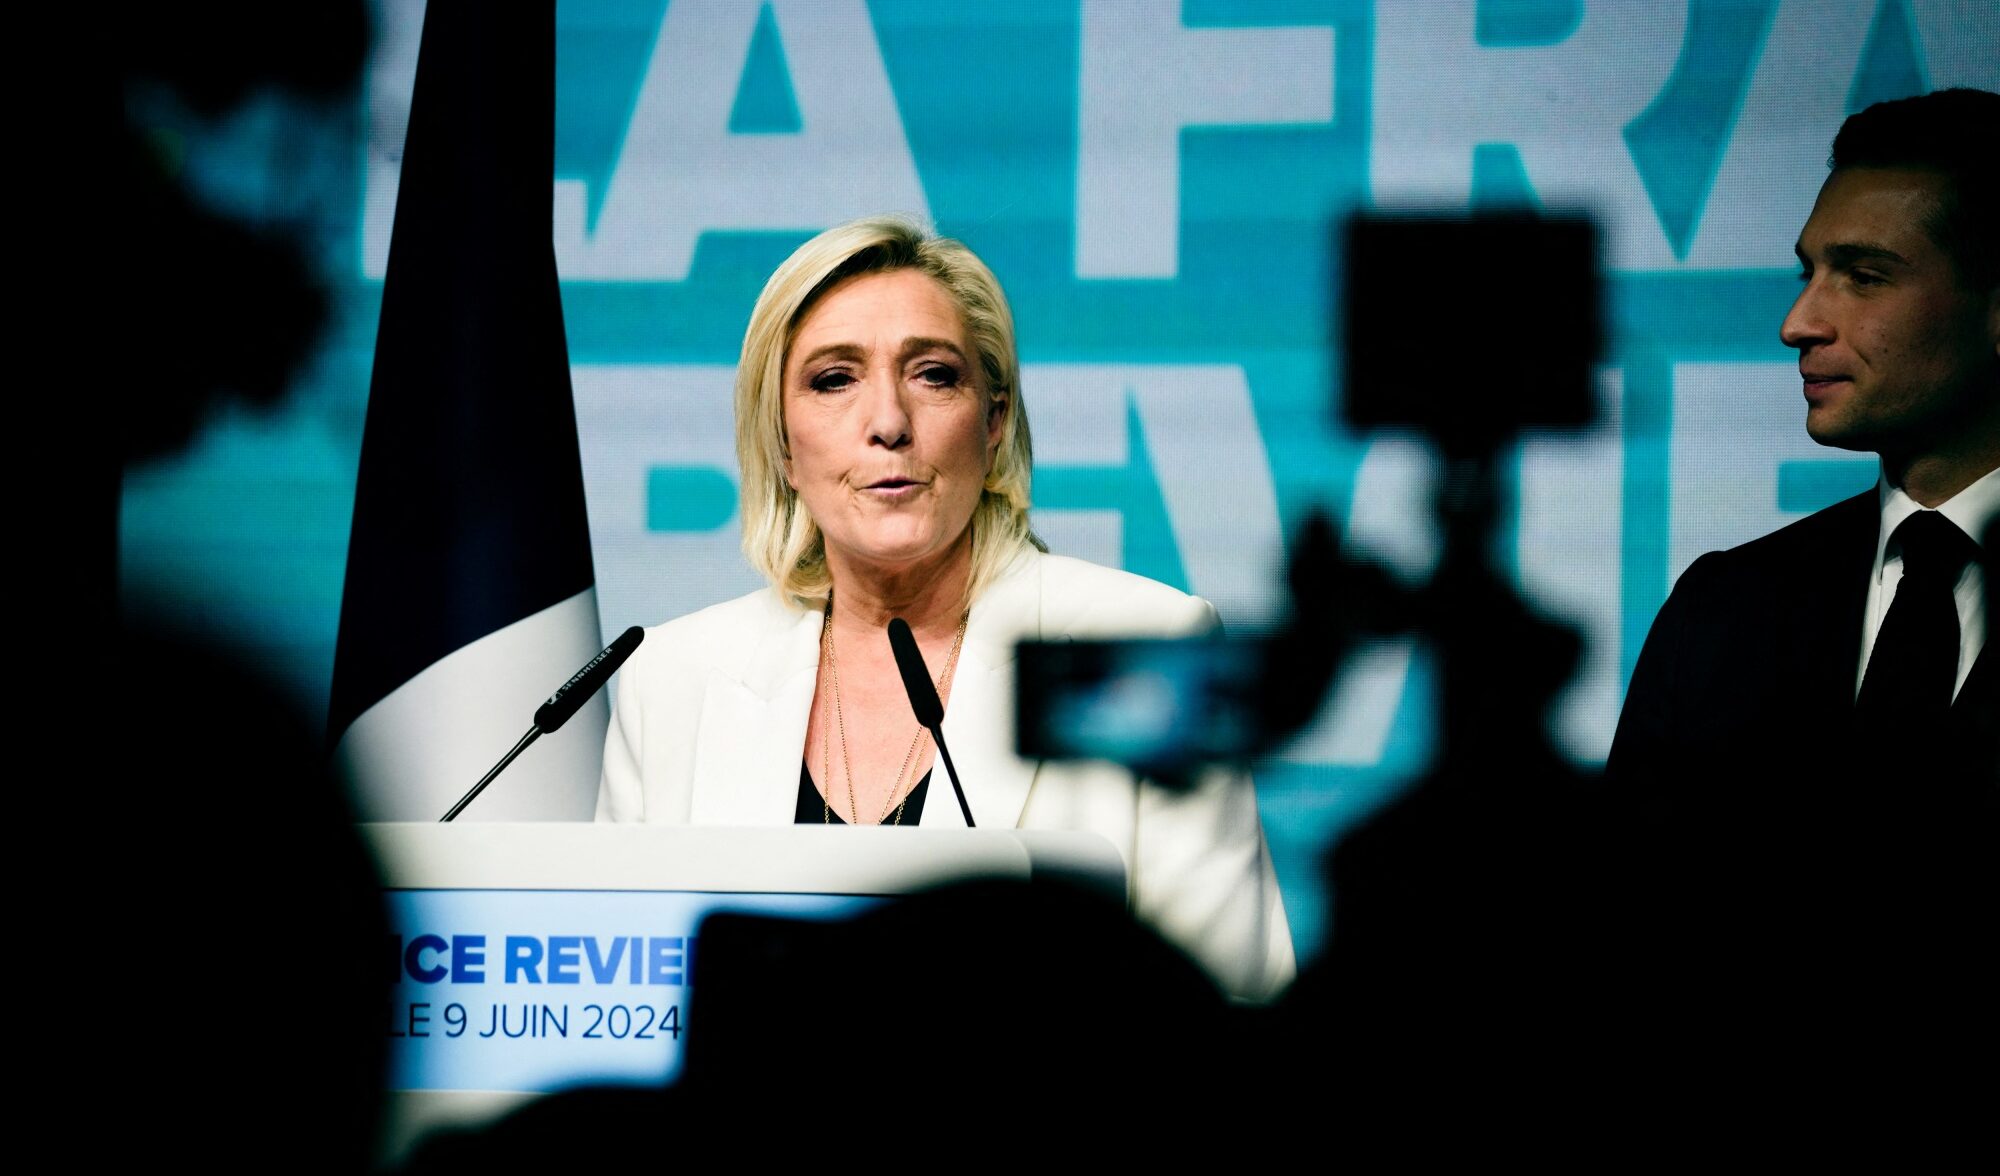 La famiglia dei miliardari Le Pen non è solo un clan mafioso: è un partito straniero